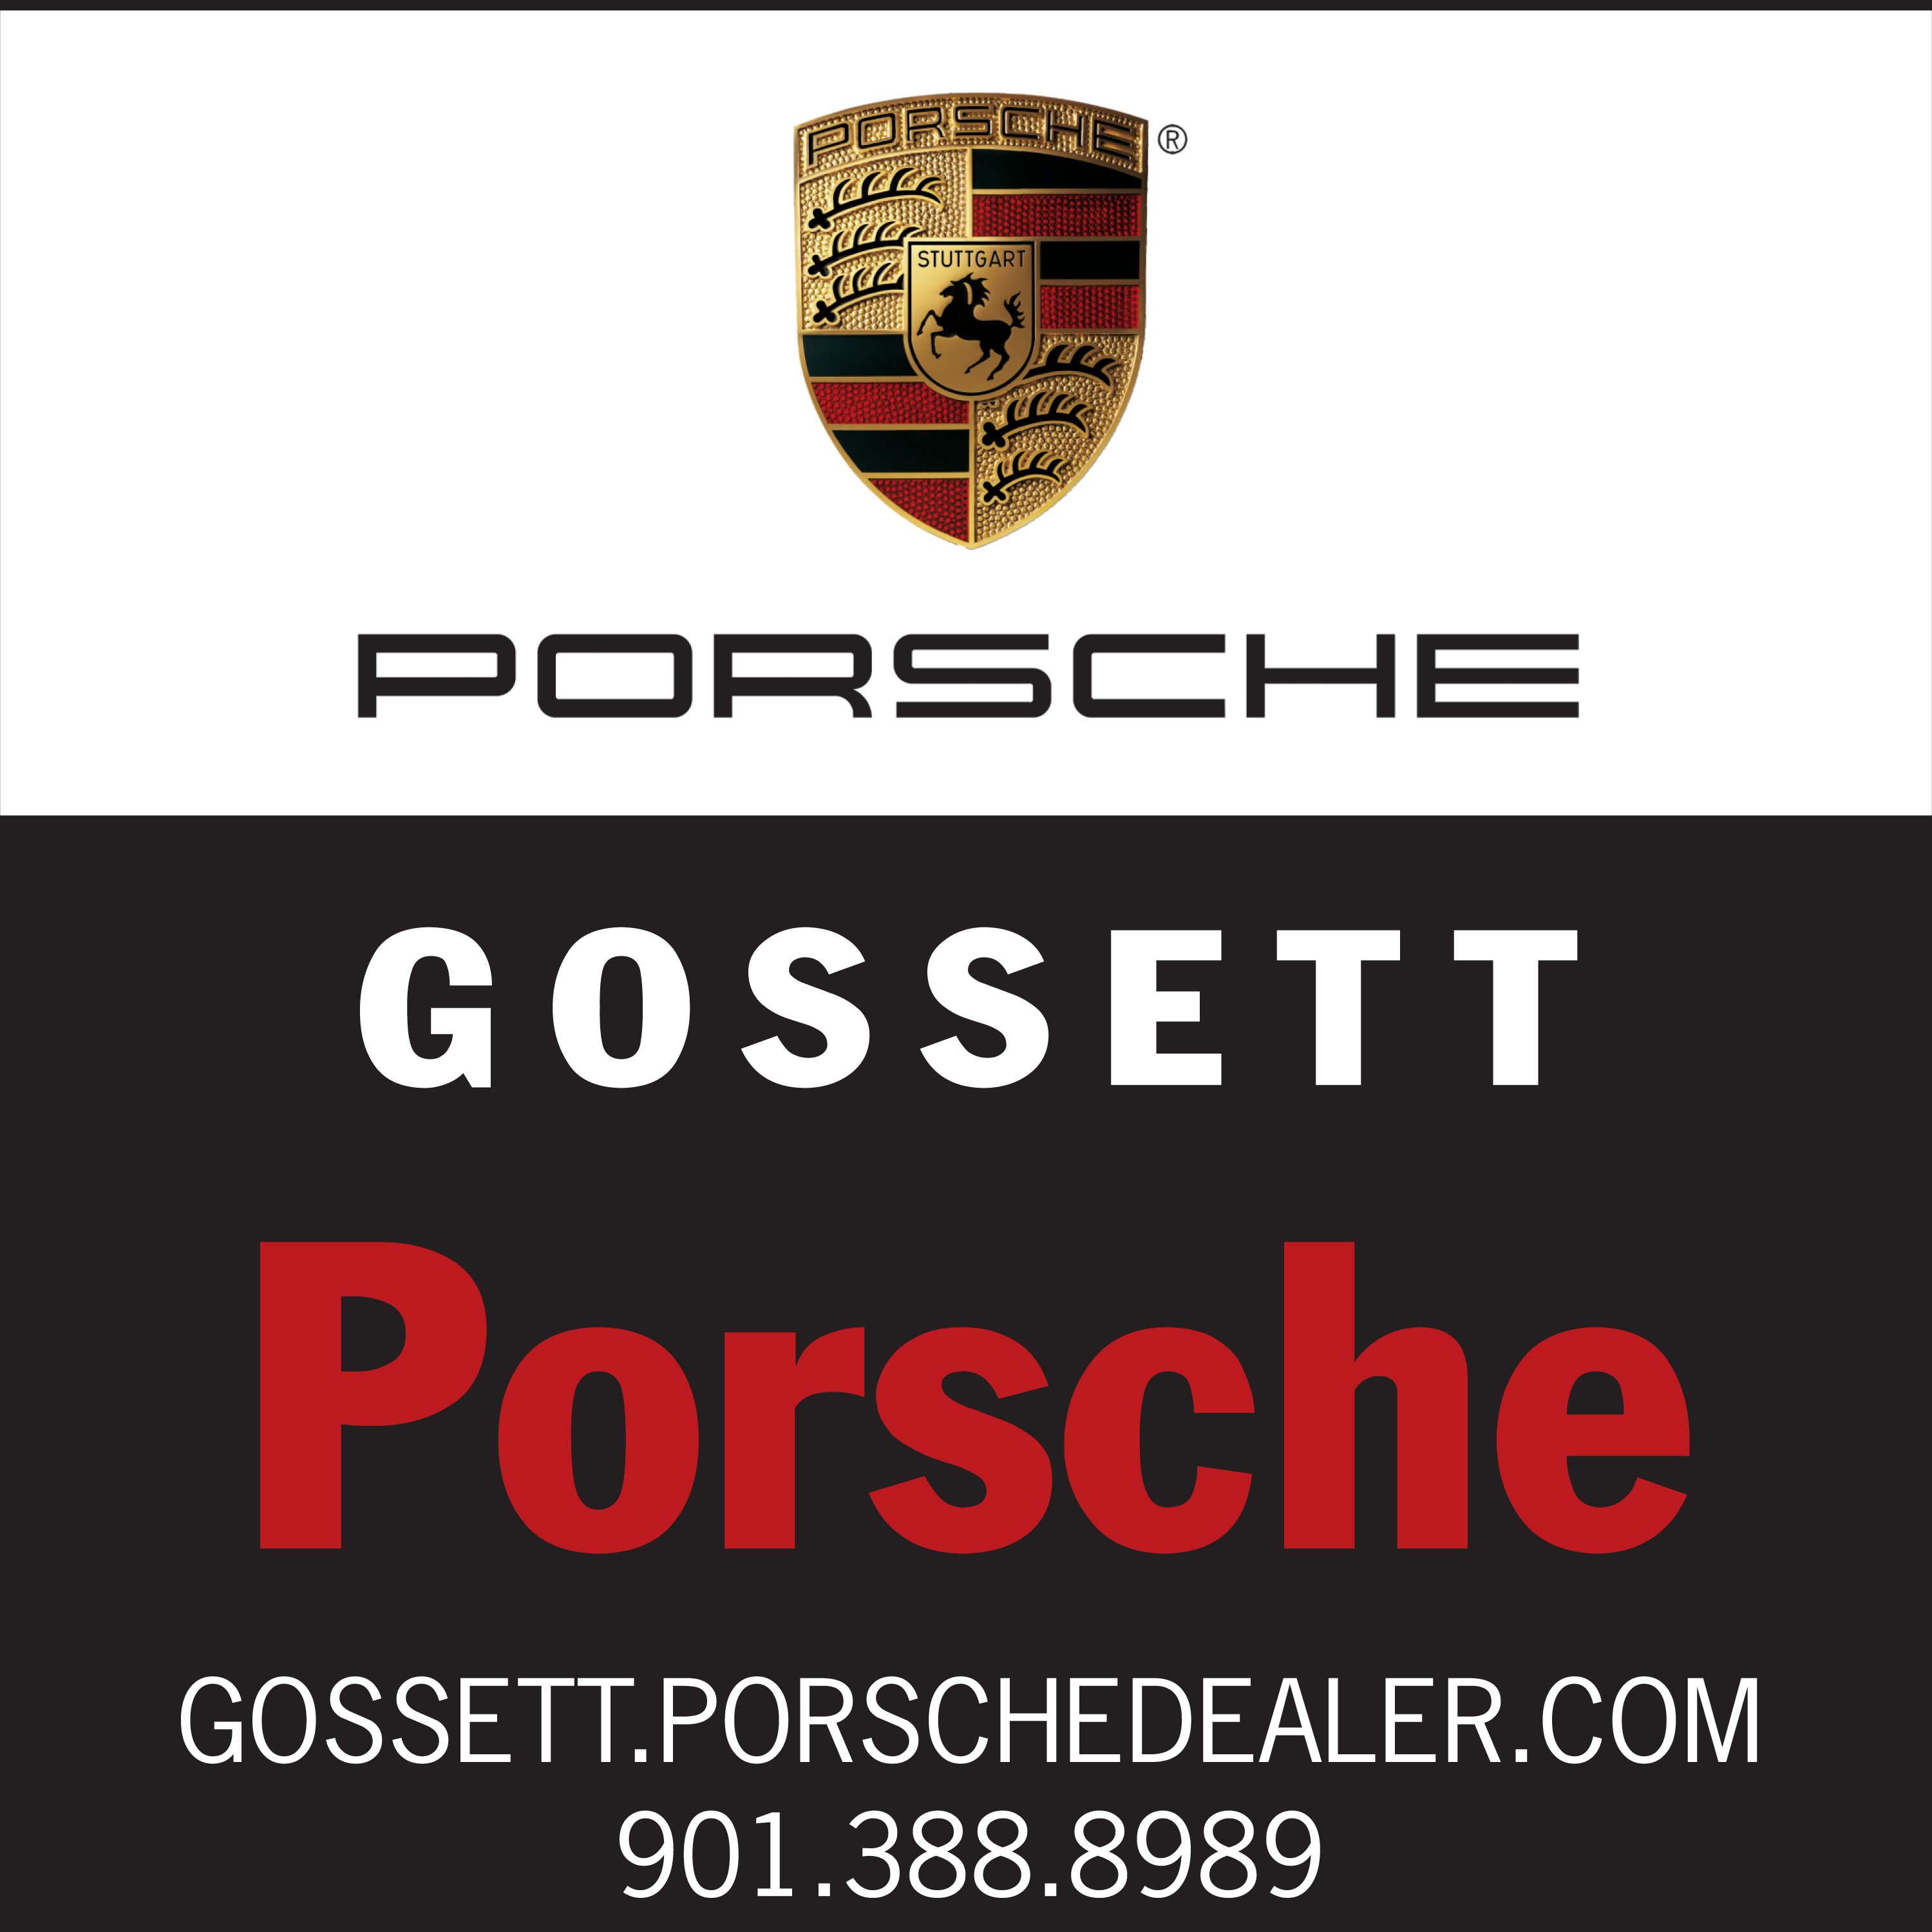 Gossett Porsche